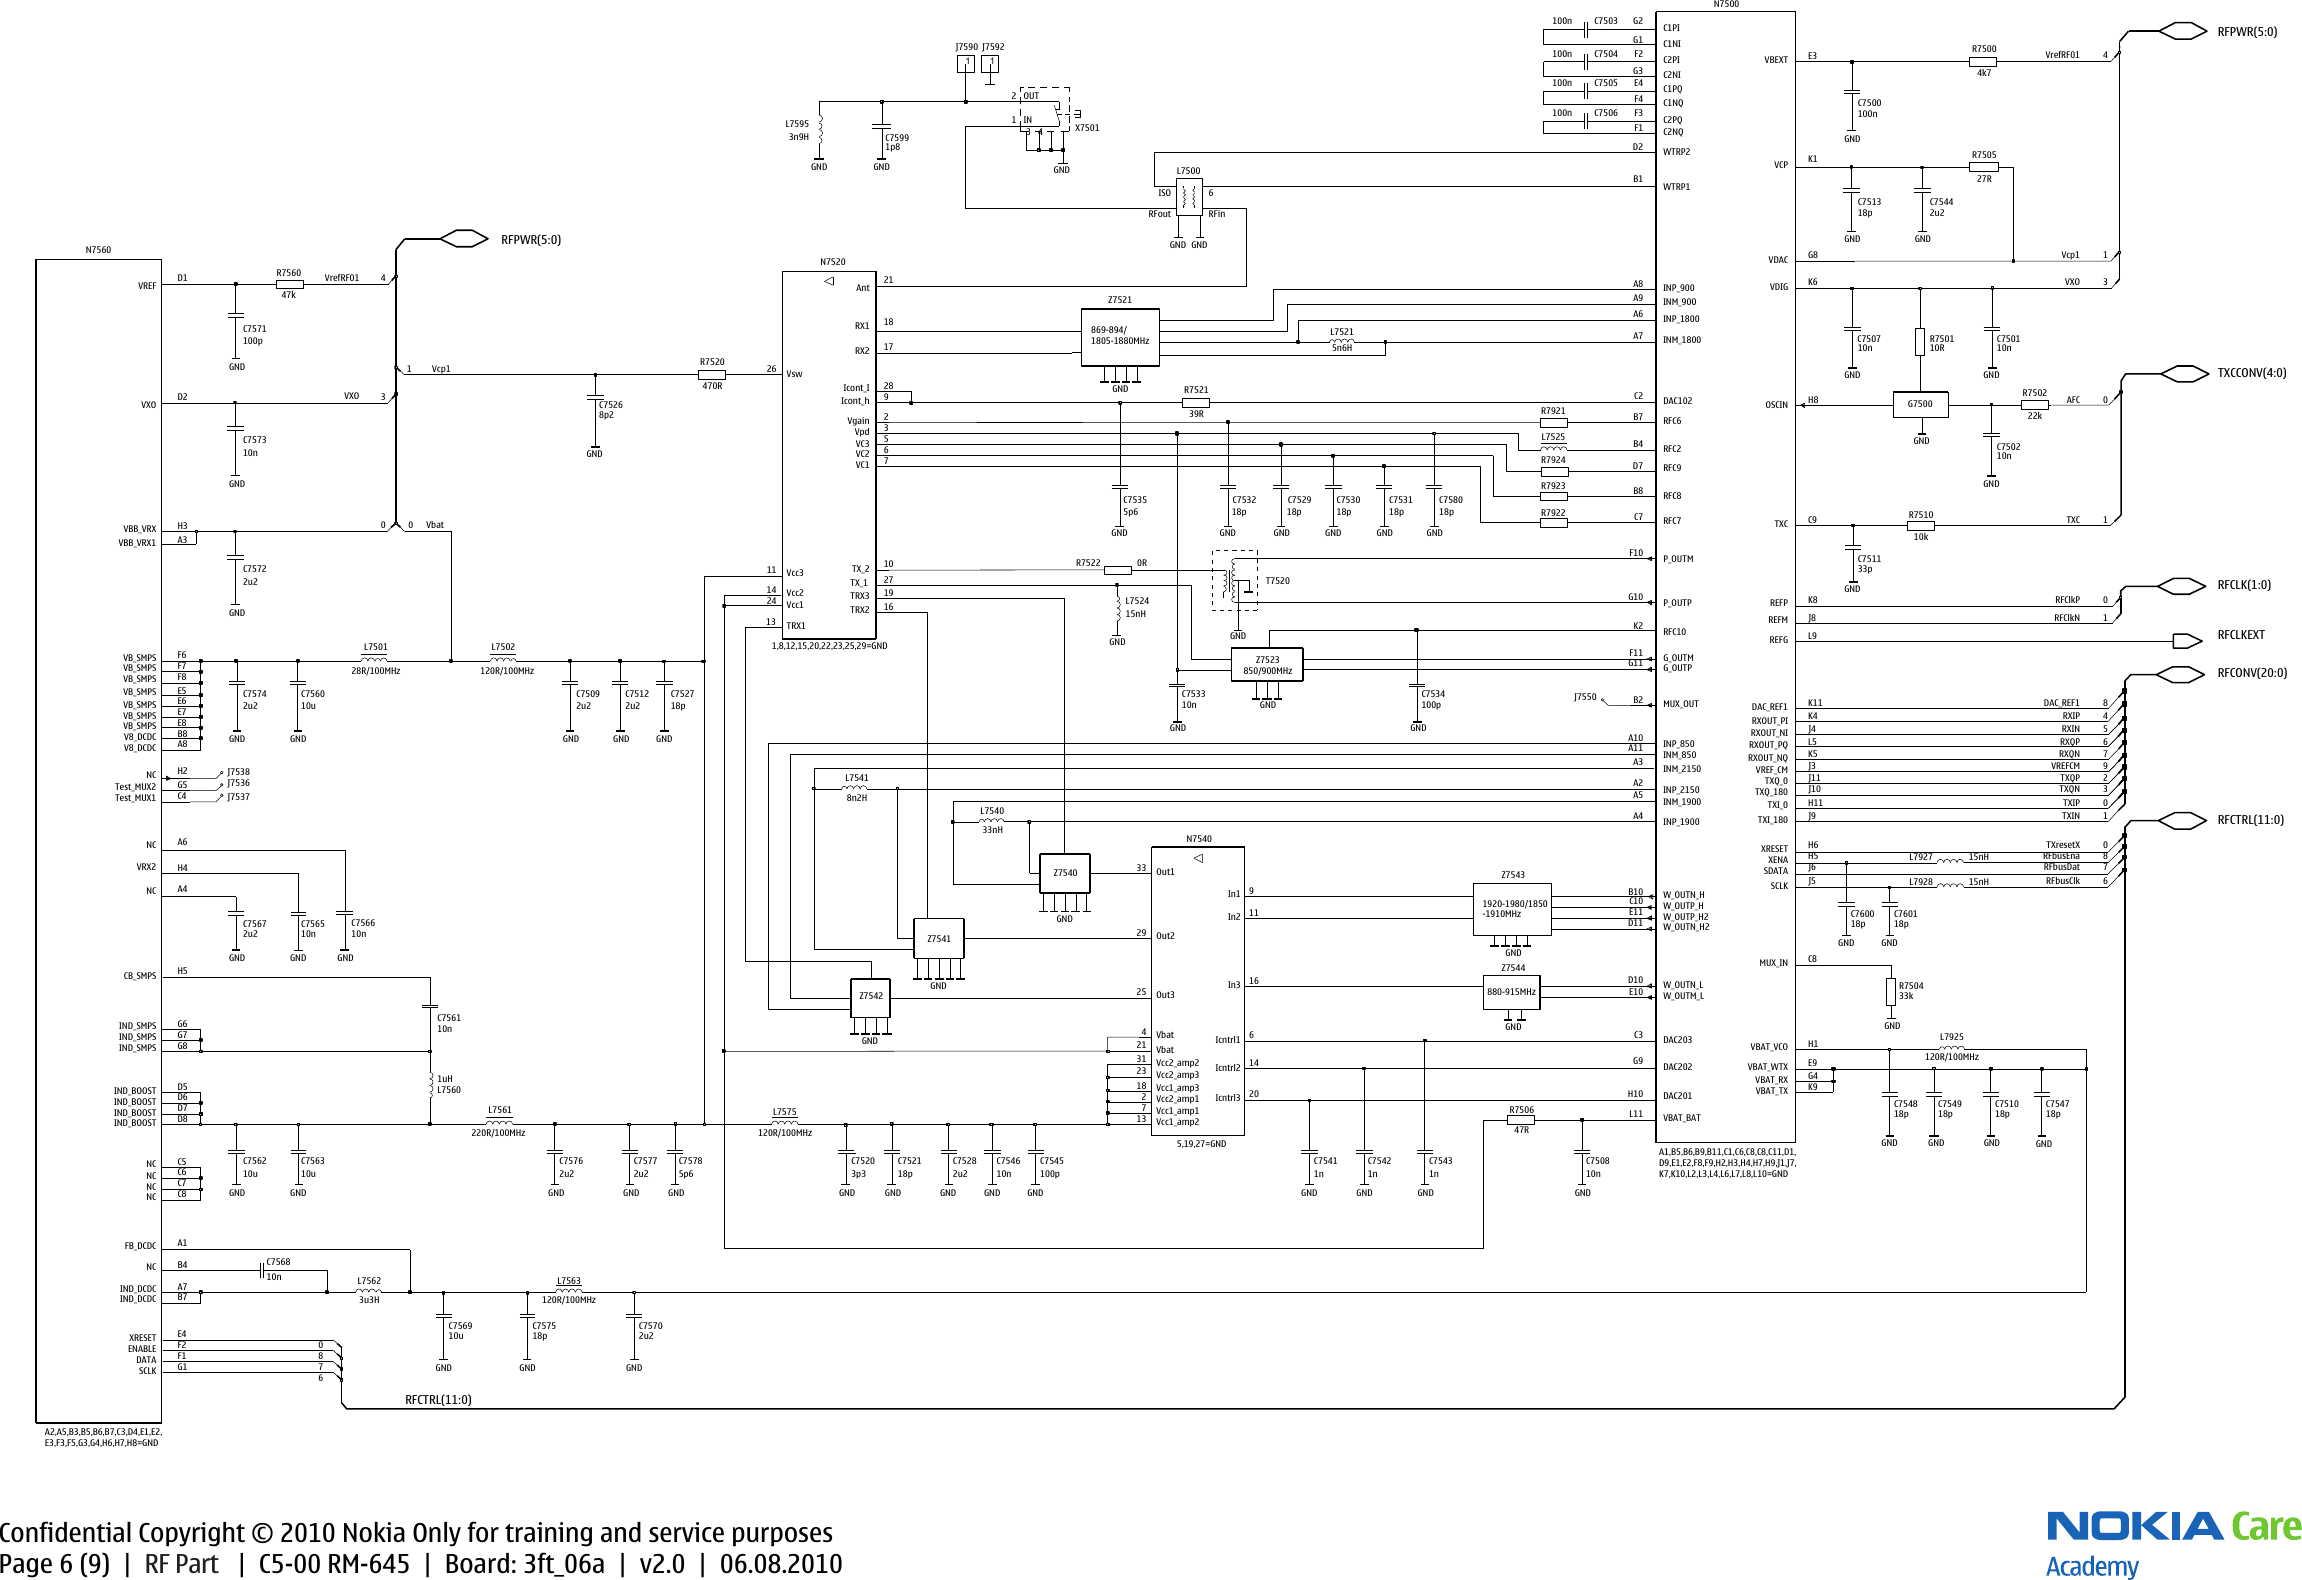 Page 6 of 10 - Nokia C5-00 RM-645 - Service Schematics. Www.s-manuals.com. Schematics V2.0